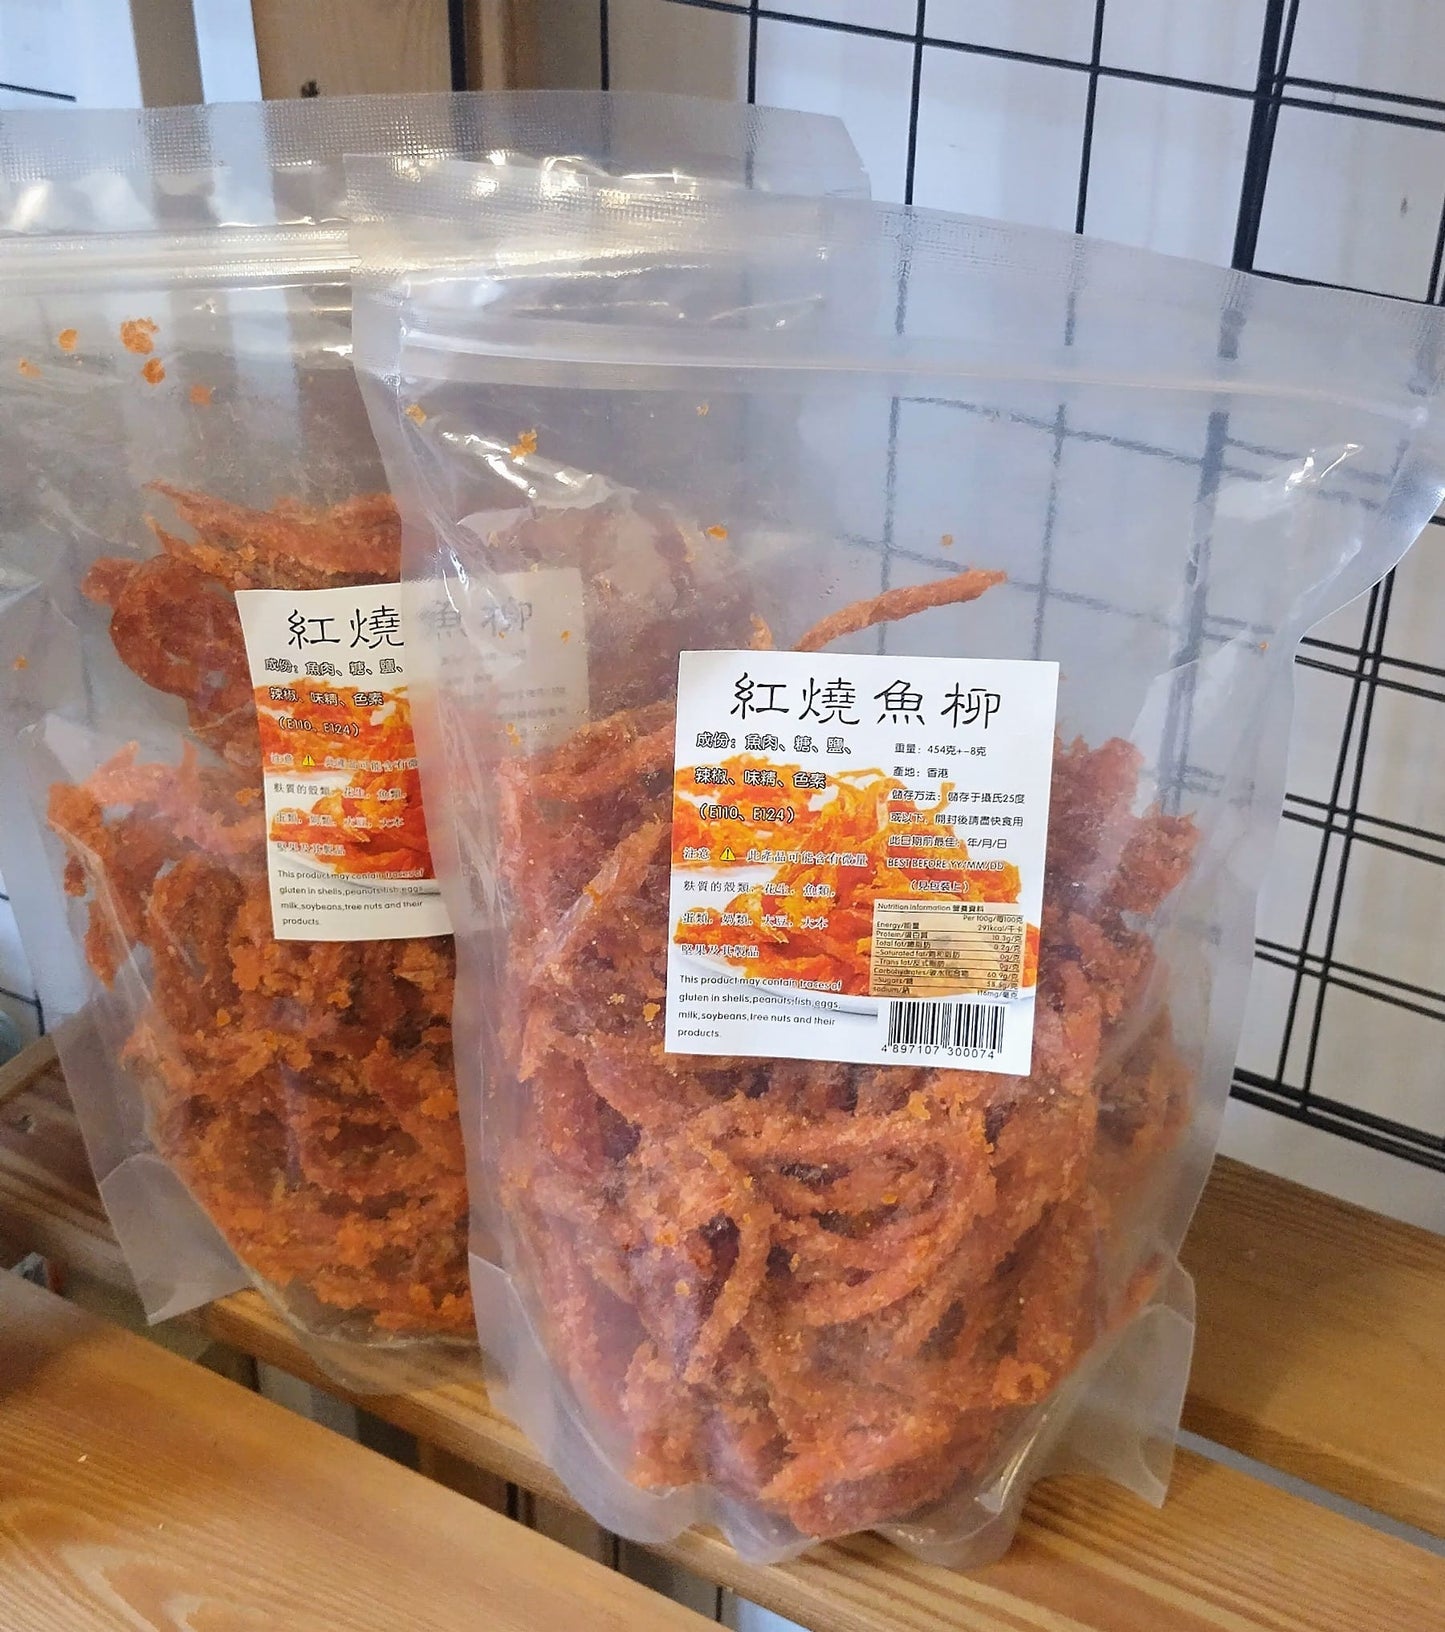 紅燒魚柳 (454克)